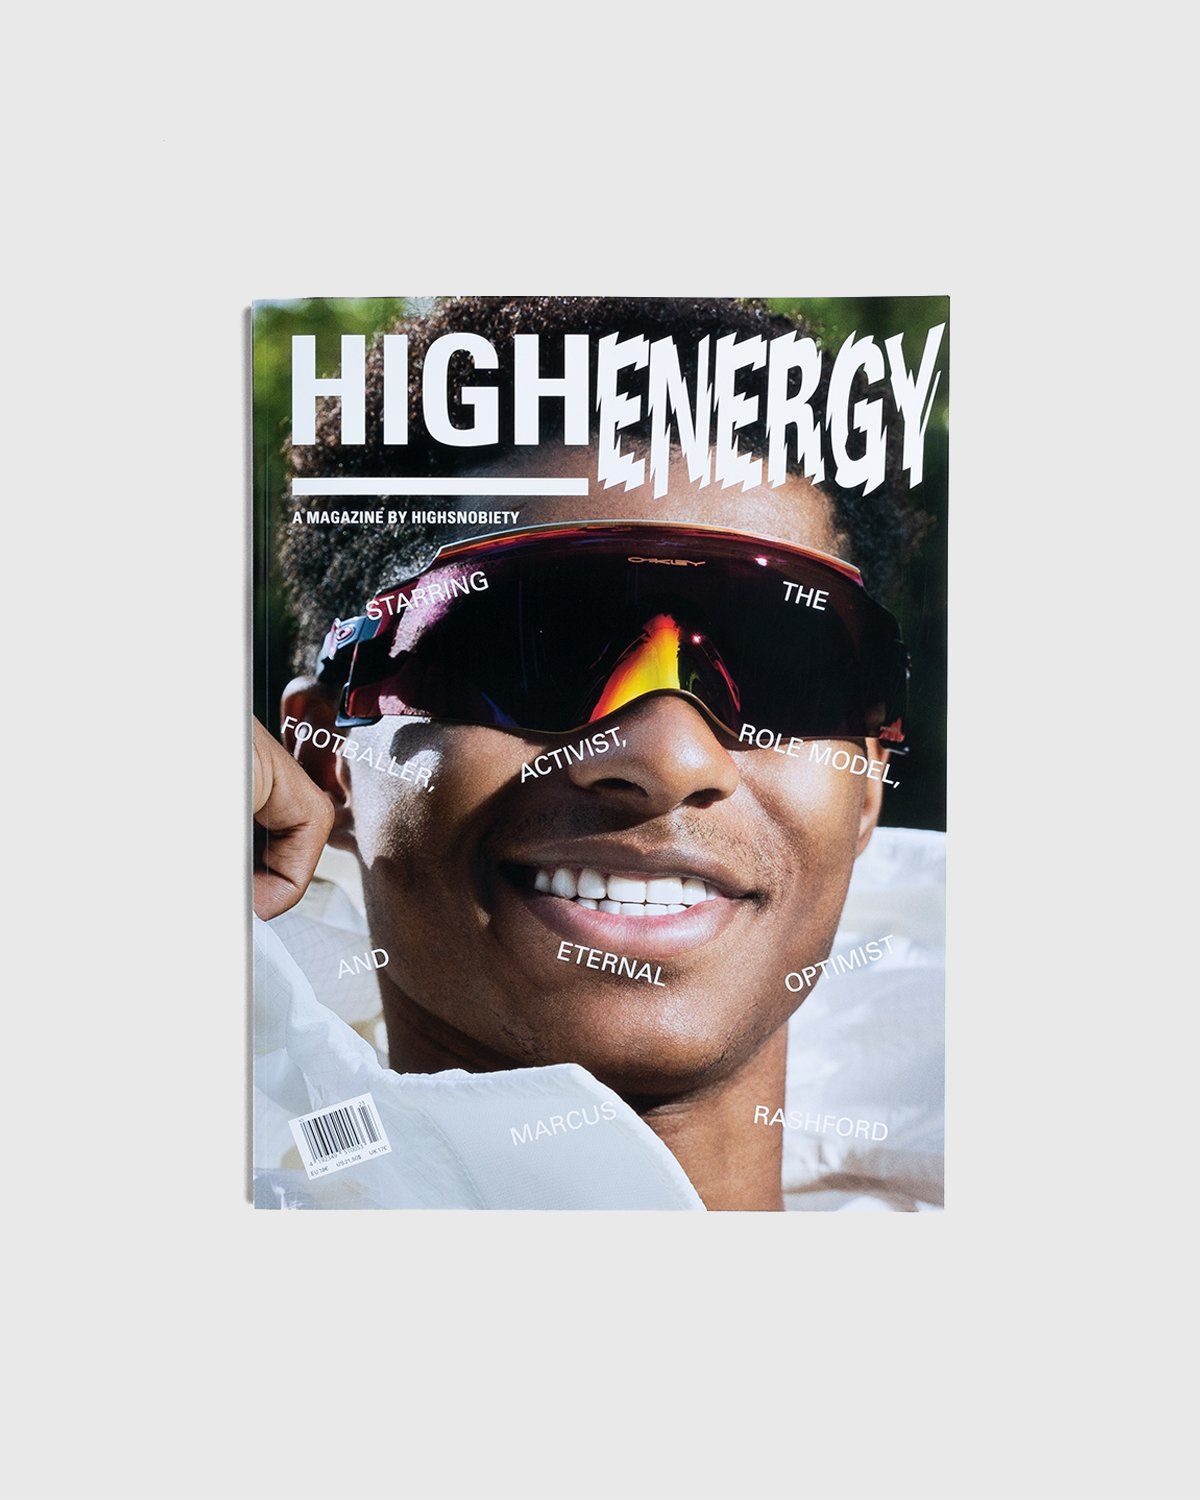 Highsnobiety – HIGHEnergy - A Magazine by Highsnobiety - Image 1